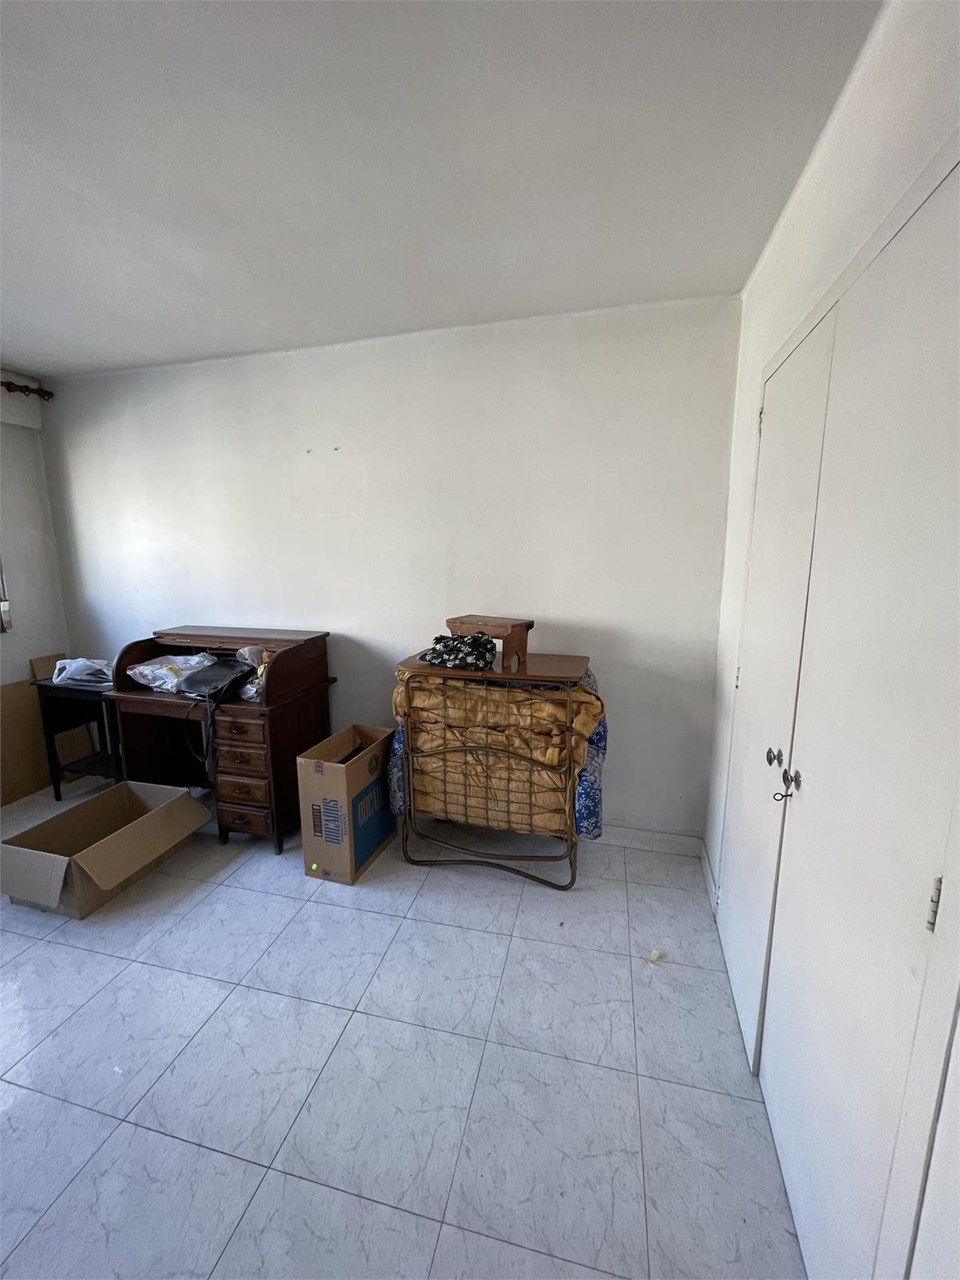 Foto 14 c/ Arenal piso amplio de 5 dormitorios